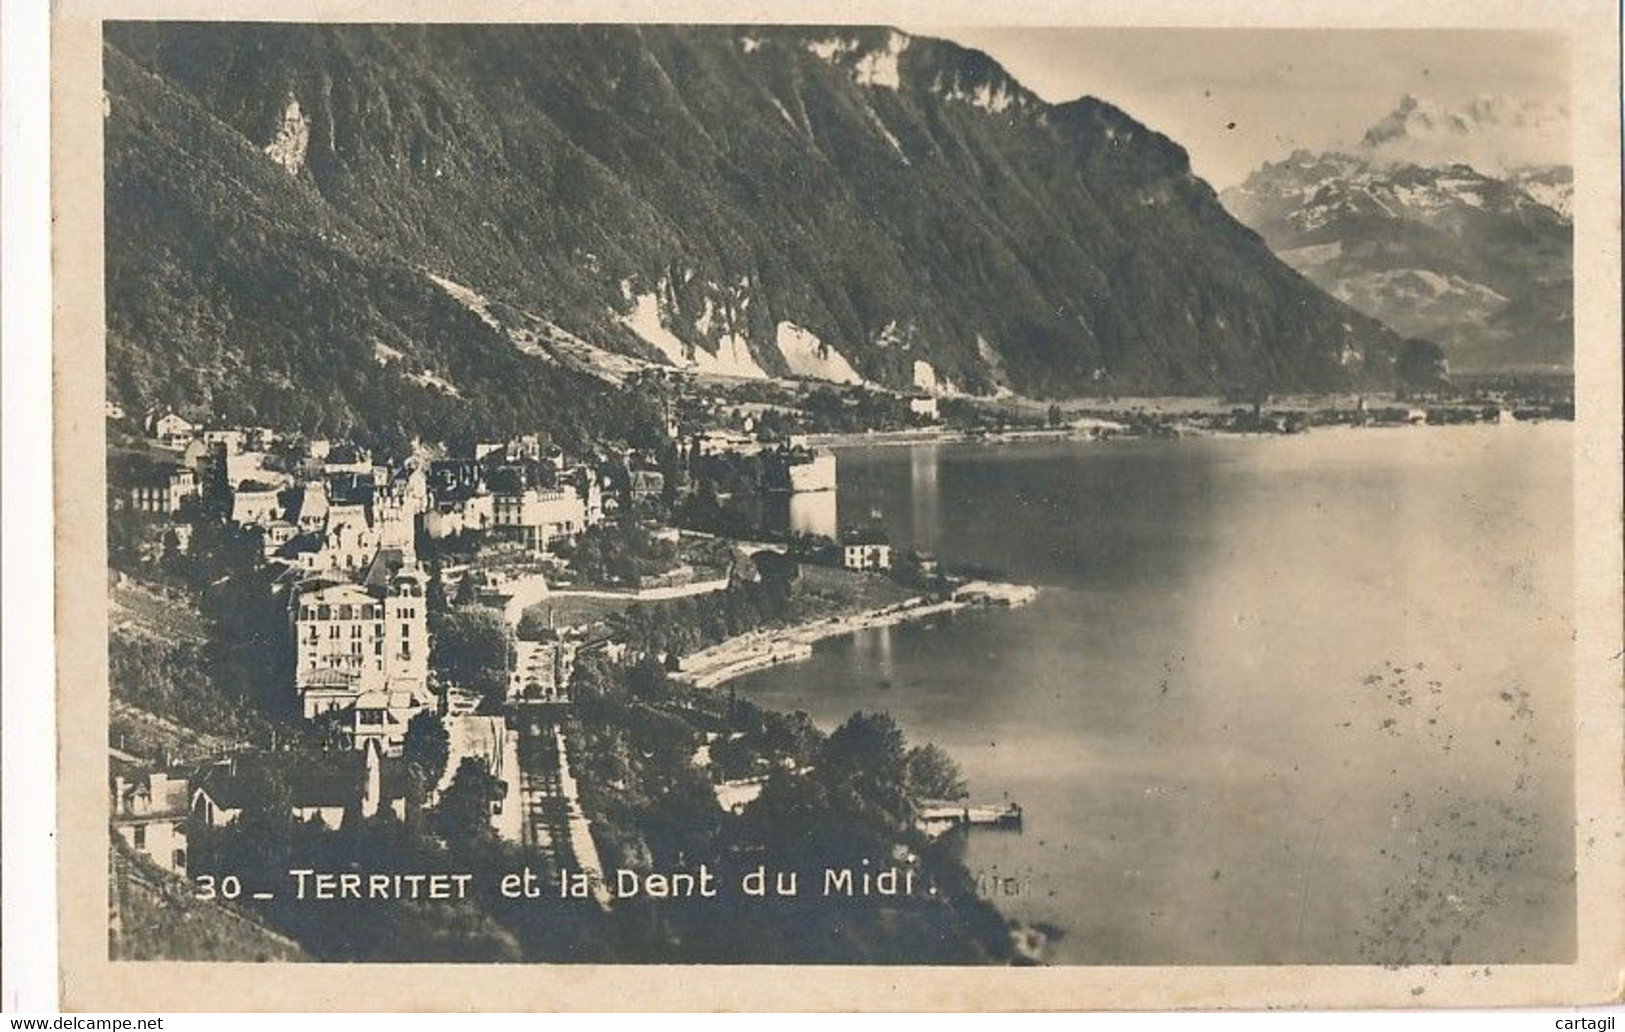 Lot -L473-SUISSE - CANTON DE VAUD - Belle sélection 40 cartes postales ( scans et description)